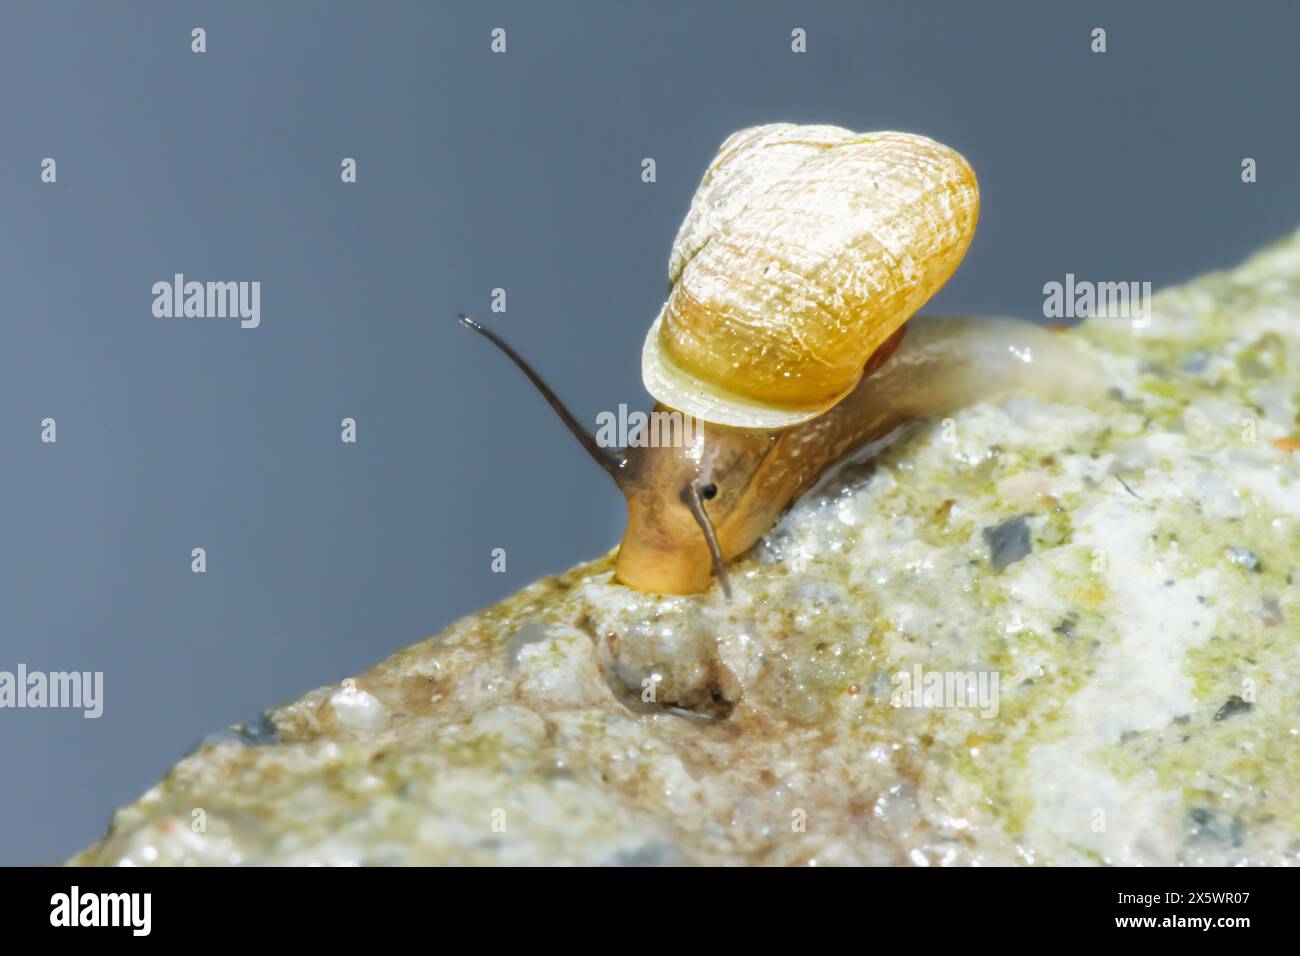 Detaillierte Ansicht einer Weißschalen-Schnecke, die auf einer strukturierten Steinoberfläche segelt. Fangen Sie das Wesen der langsam bewegten Tiere in ihrem natürlichen Lebensraum in Wu ein Stockfoto